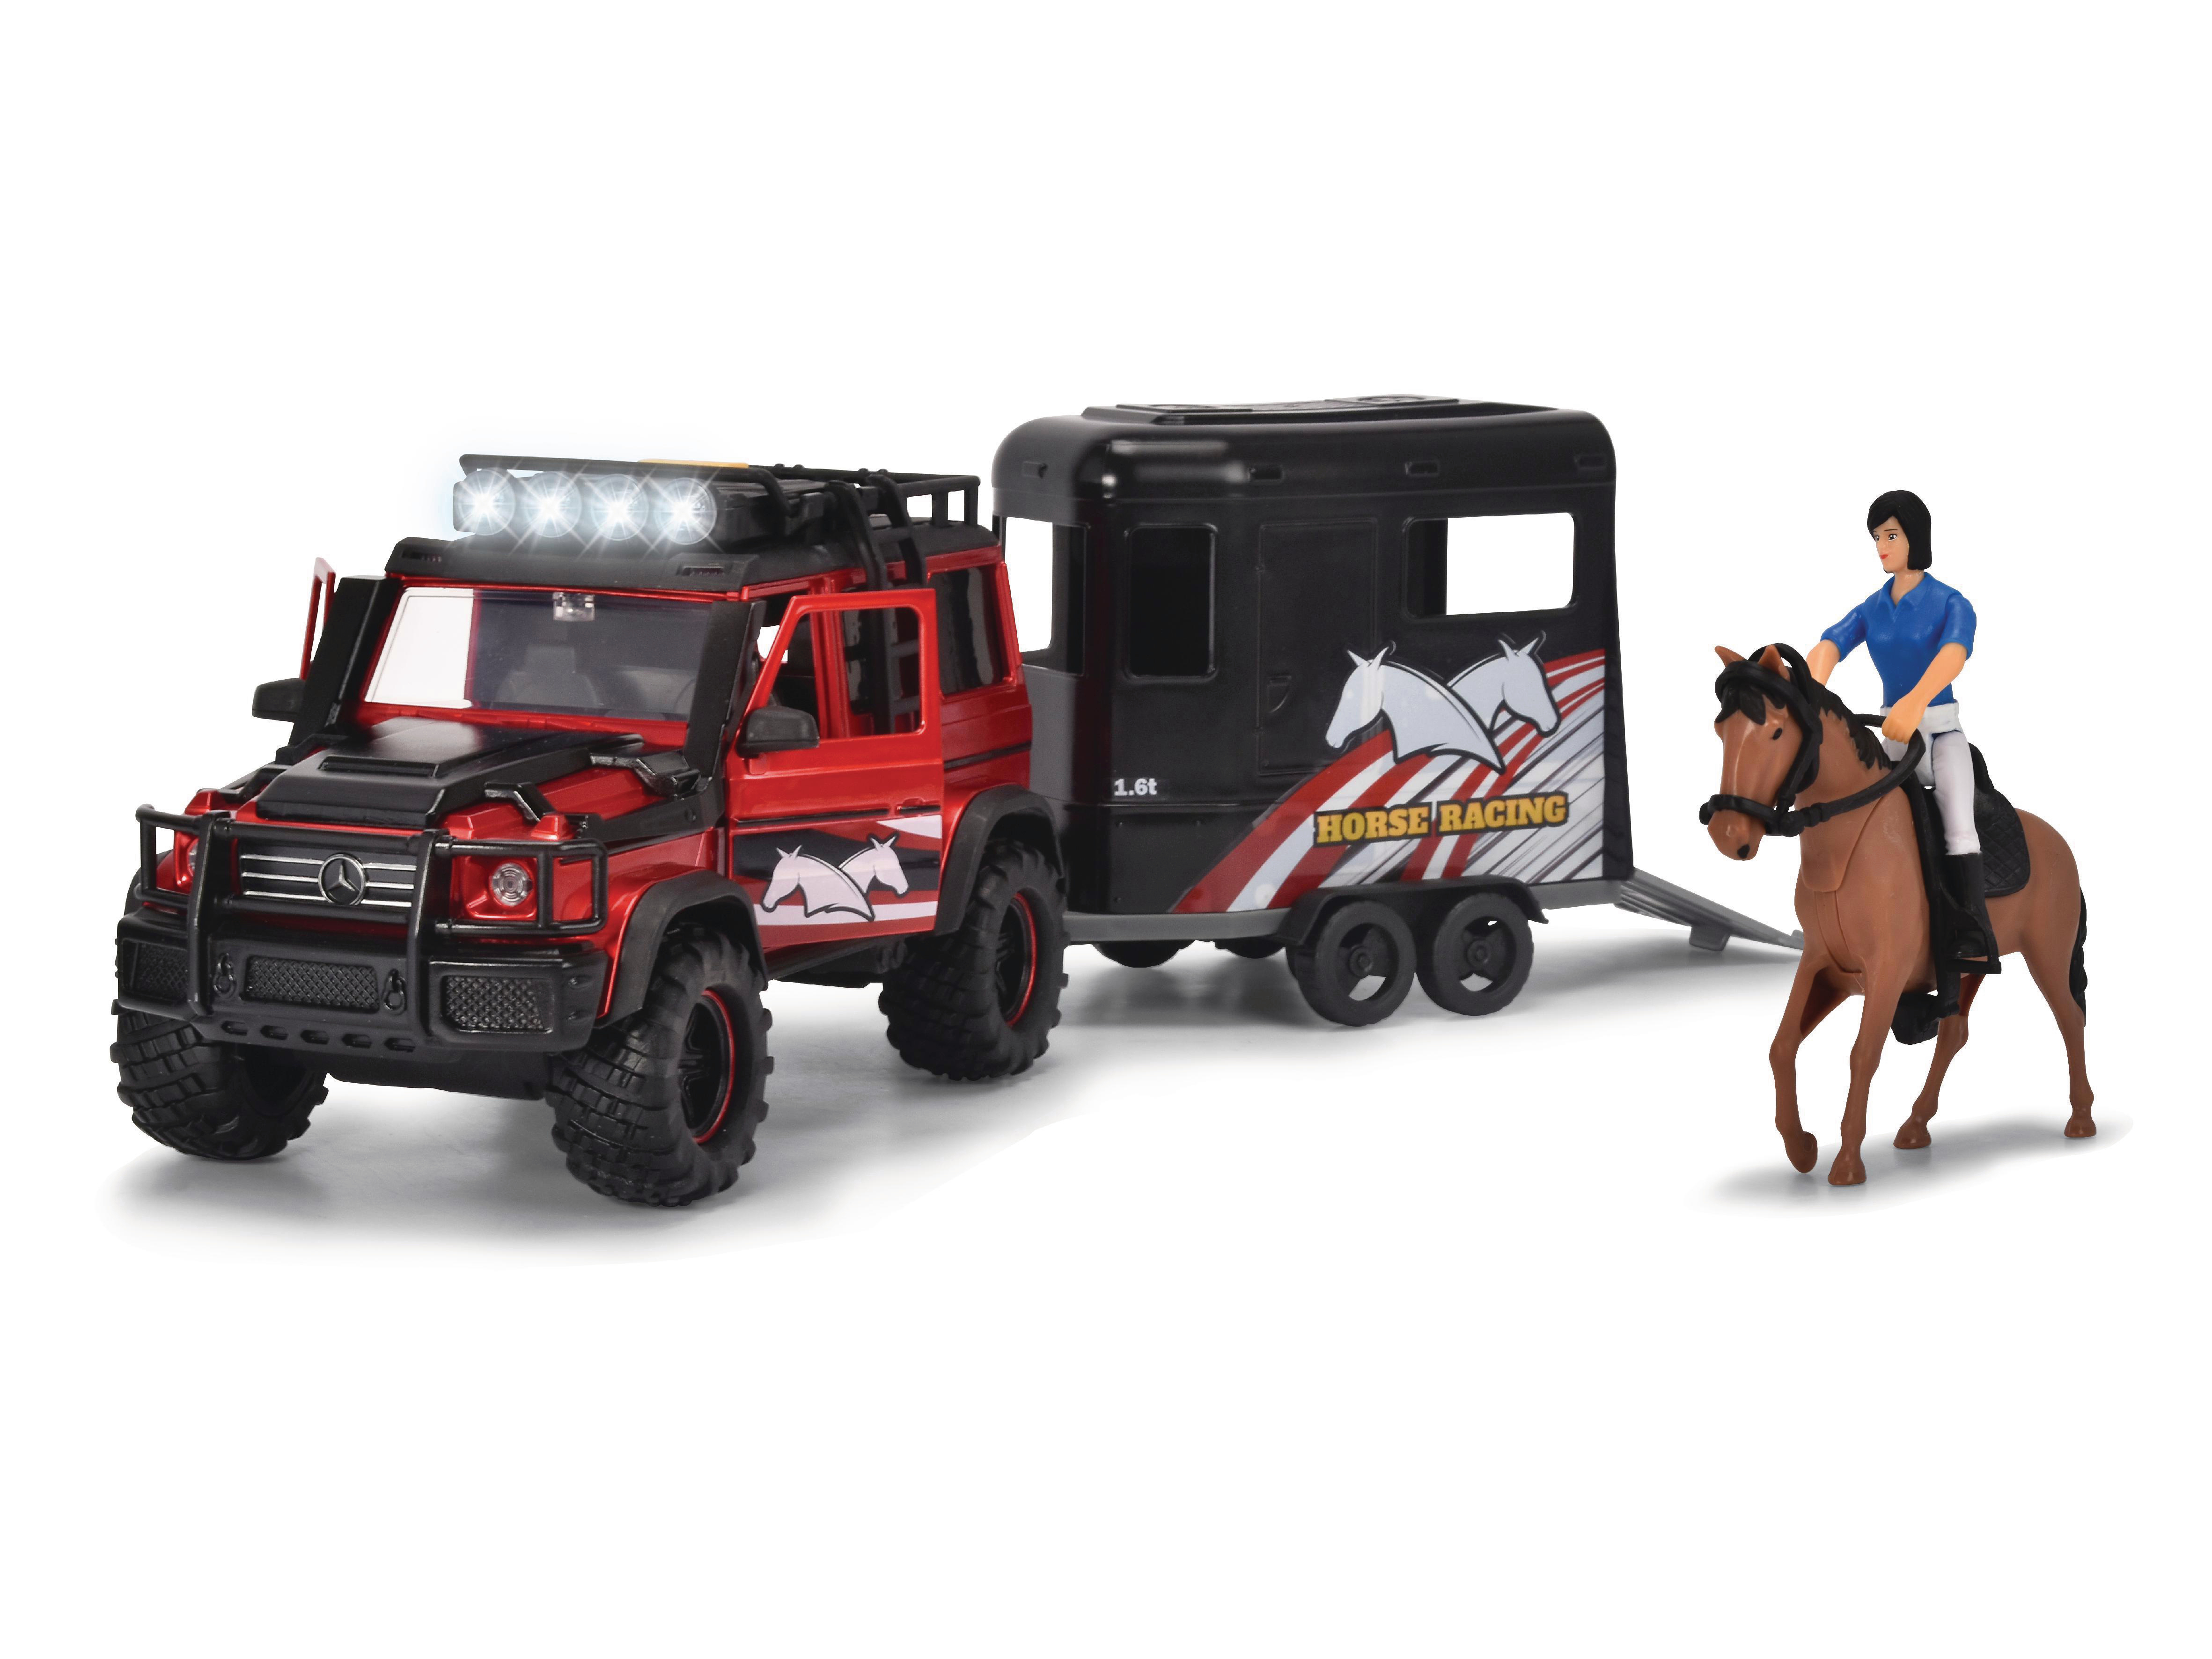 DICKIE-TOYS Pferdeanhänger Set, mit Spielzeugauto AMG Pferd Mercedes Pferdeanhänger Geländewagen Benz 500 Rot 